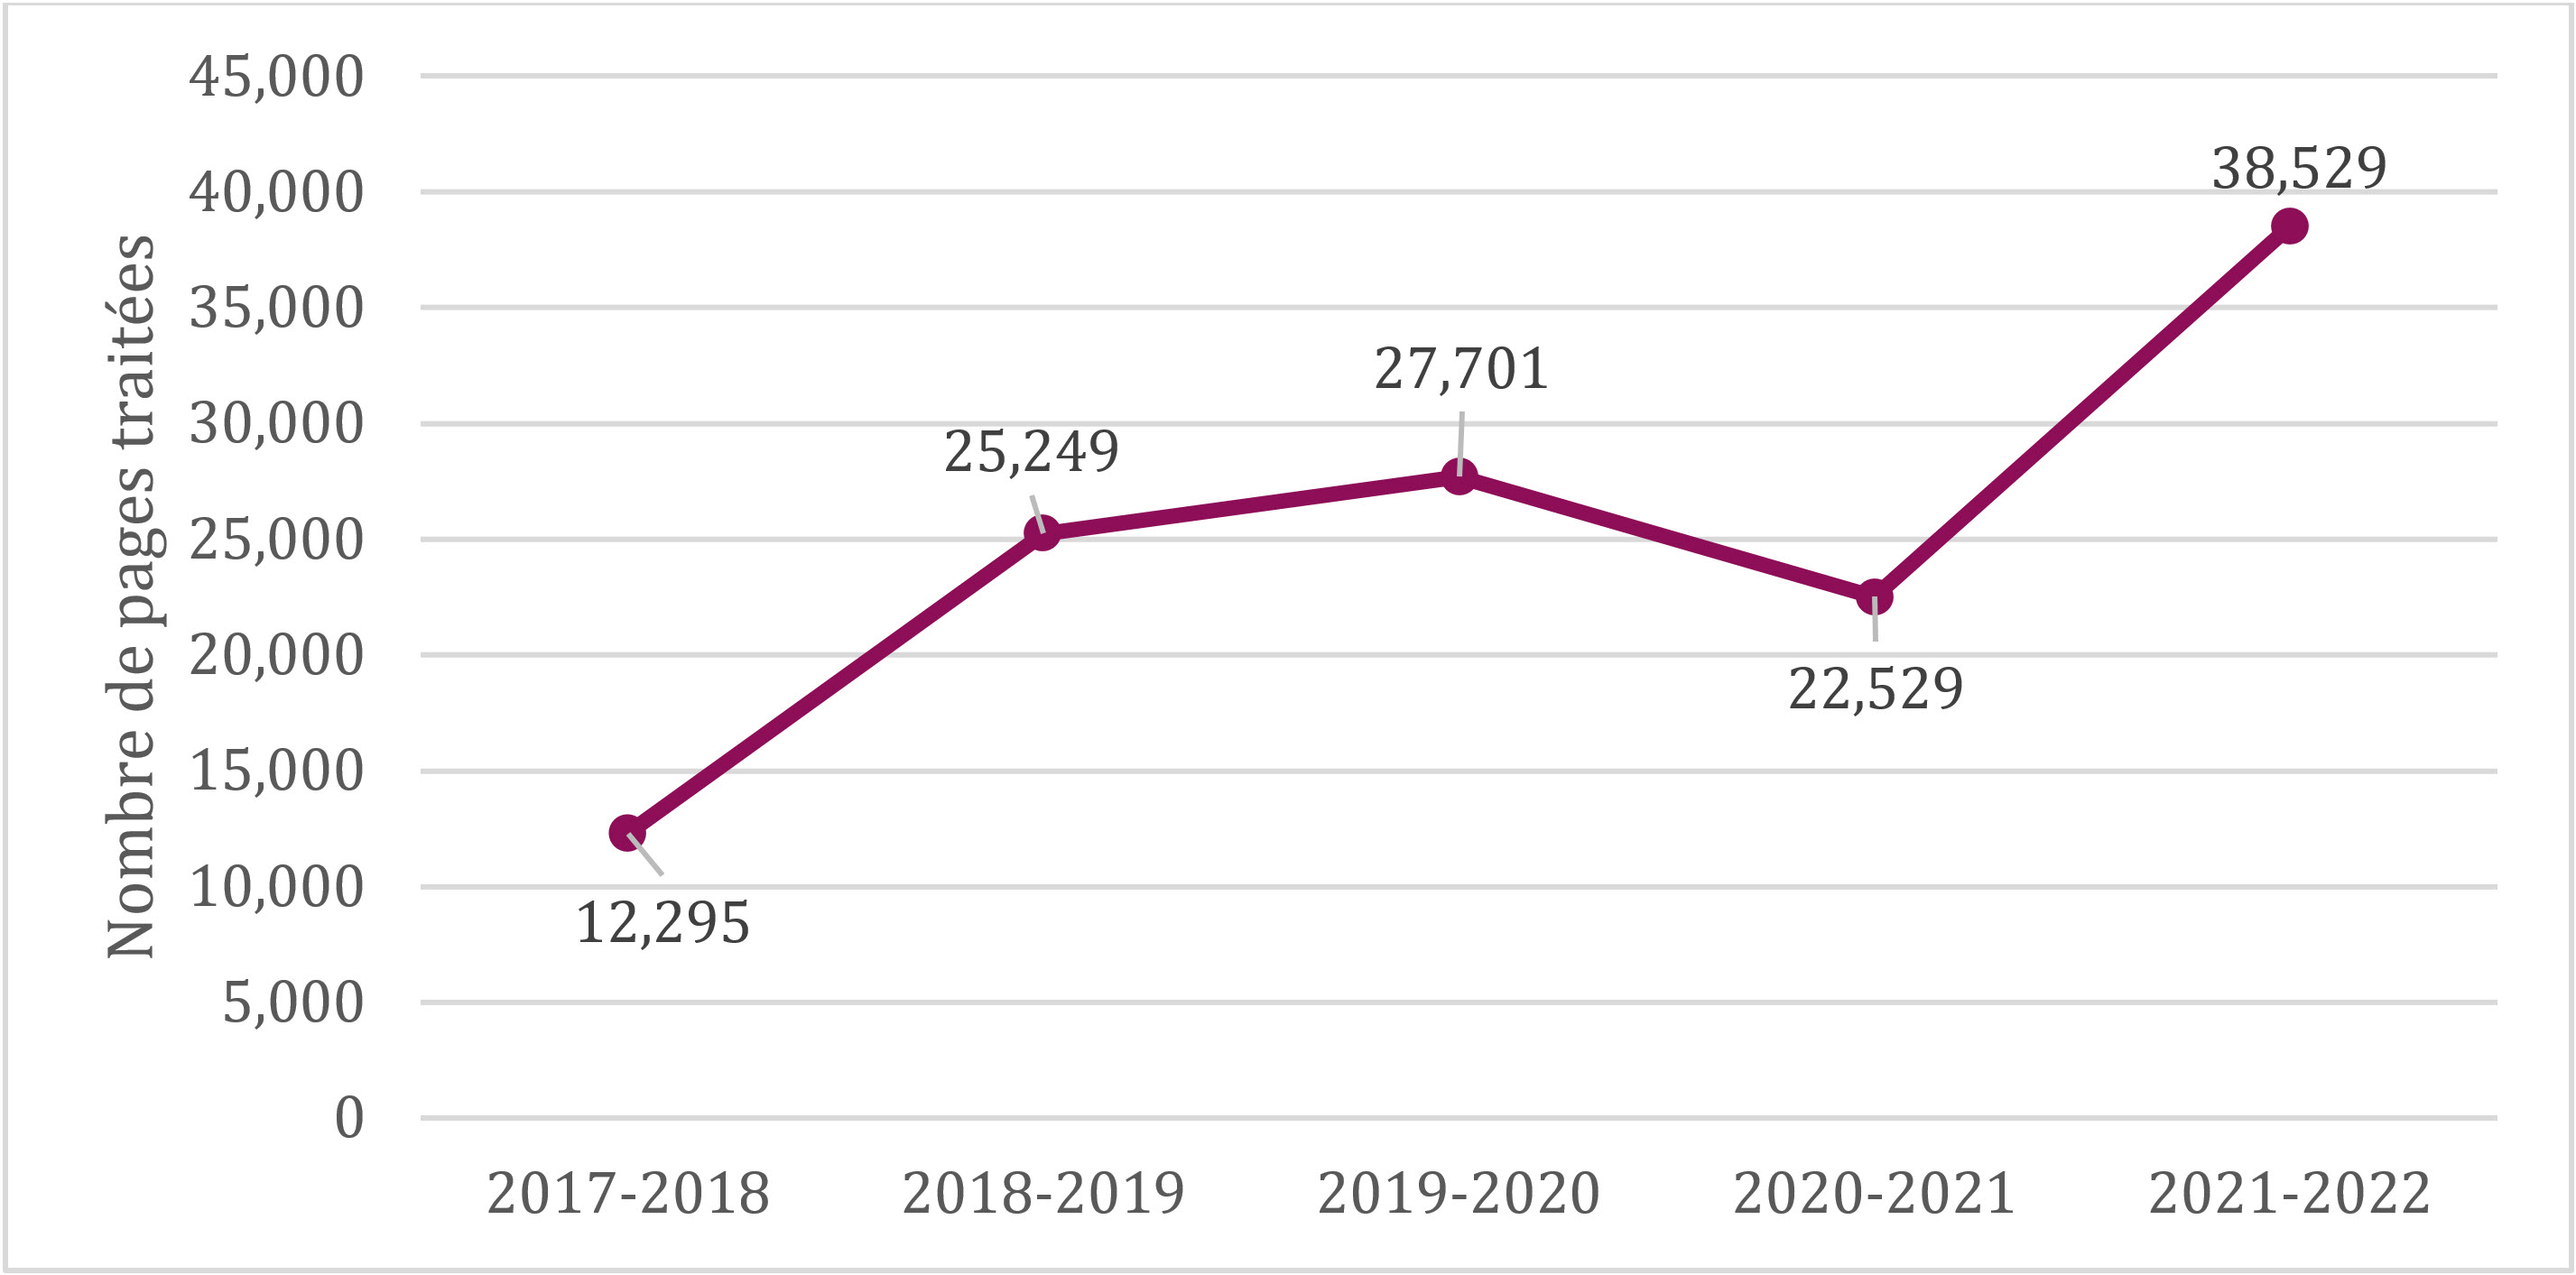 Nombre de pages traitées, de 2017-2018 à 2021-2022